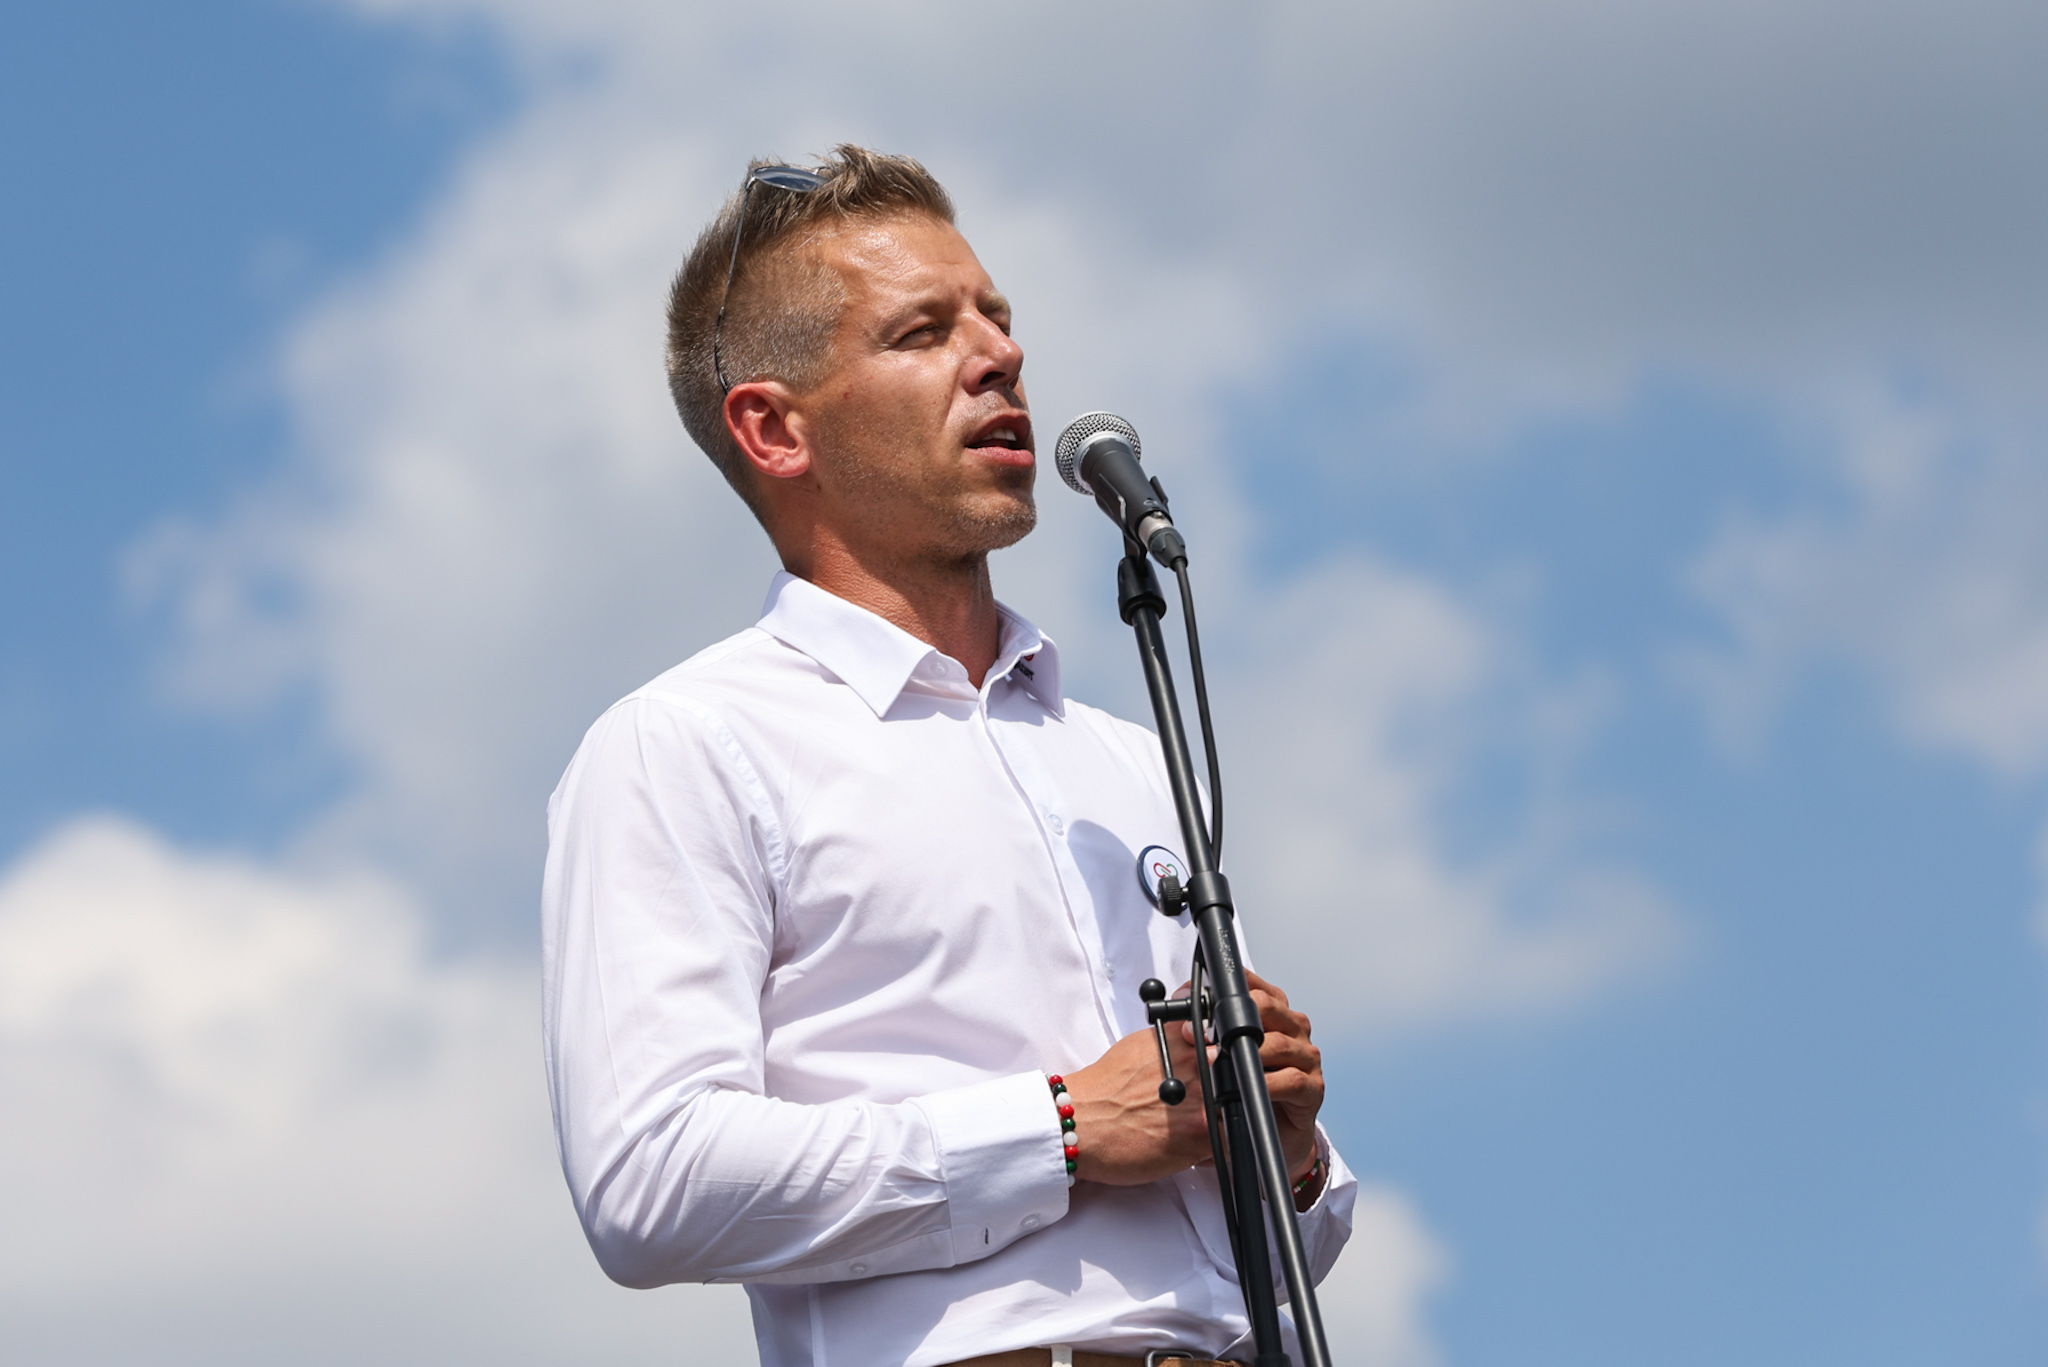 Magyar Péter az EPP-tagságról: Különleges pillanat hazánk és a Néppárt számára is